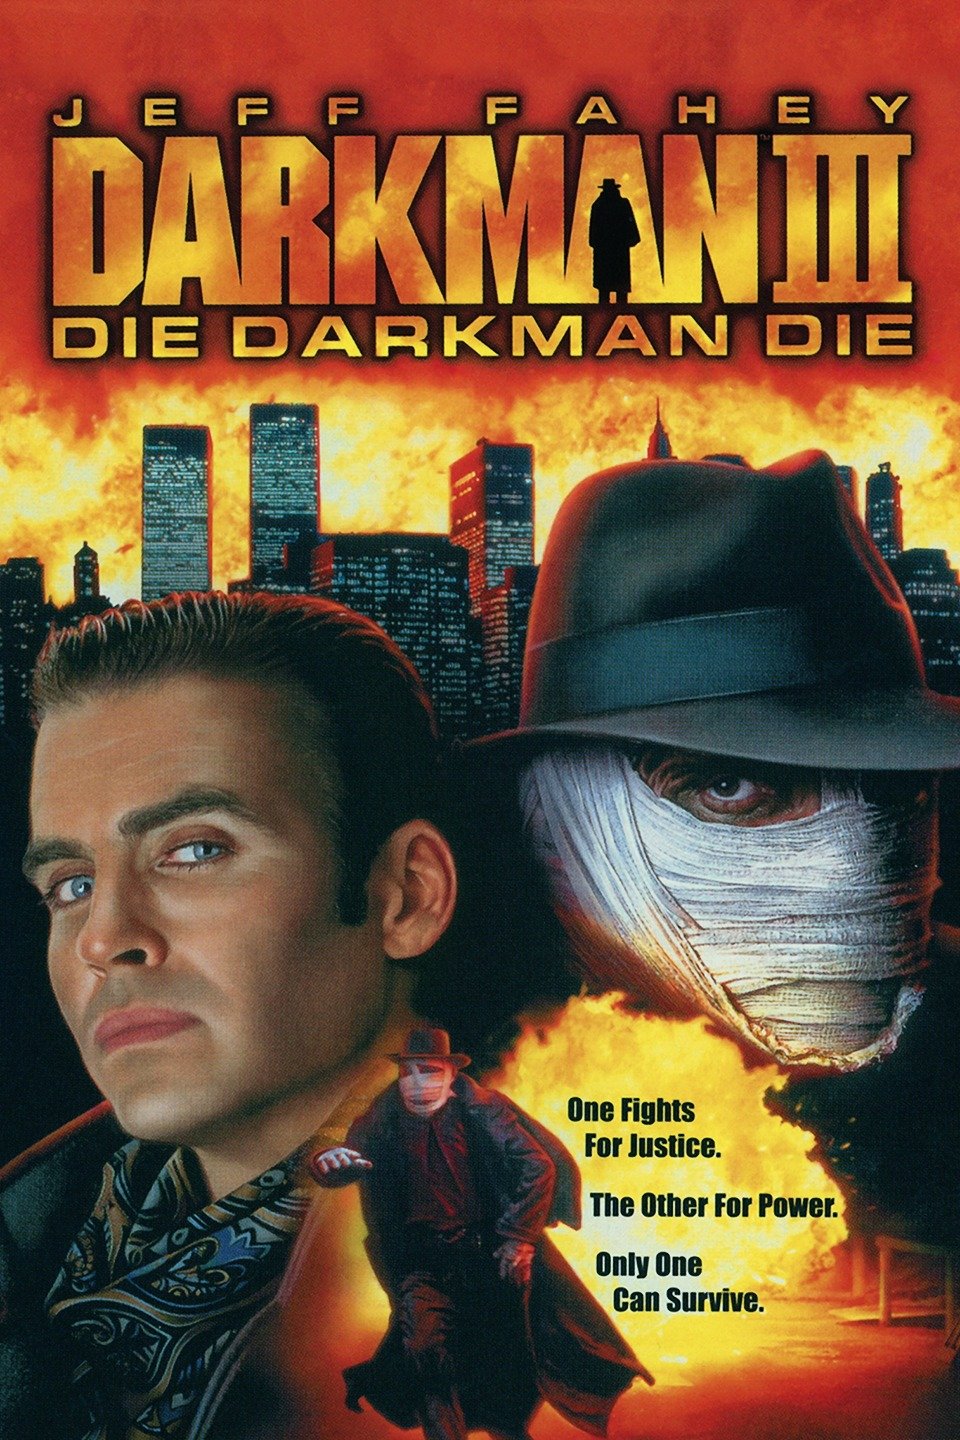 [MINI-HD] Darkman III: Die Darkman Die (1996) ดาร์คแมน พลิกเกมล่า ภาค 3 [720p] [พากย์ไทย 5.1] [ไม่มีบรรยาย] [เสียงไทย] [OPENLOAD]